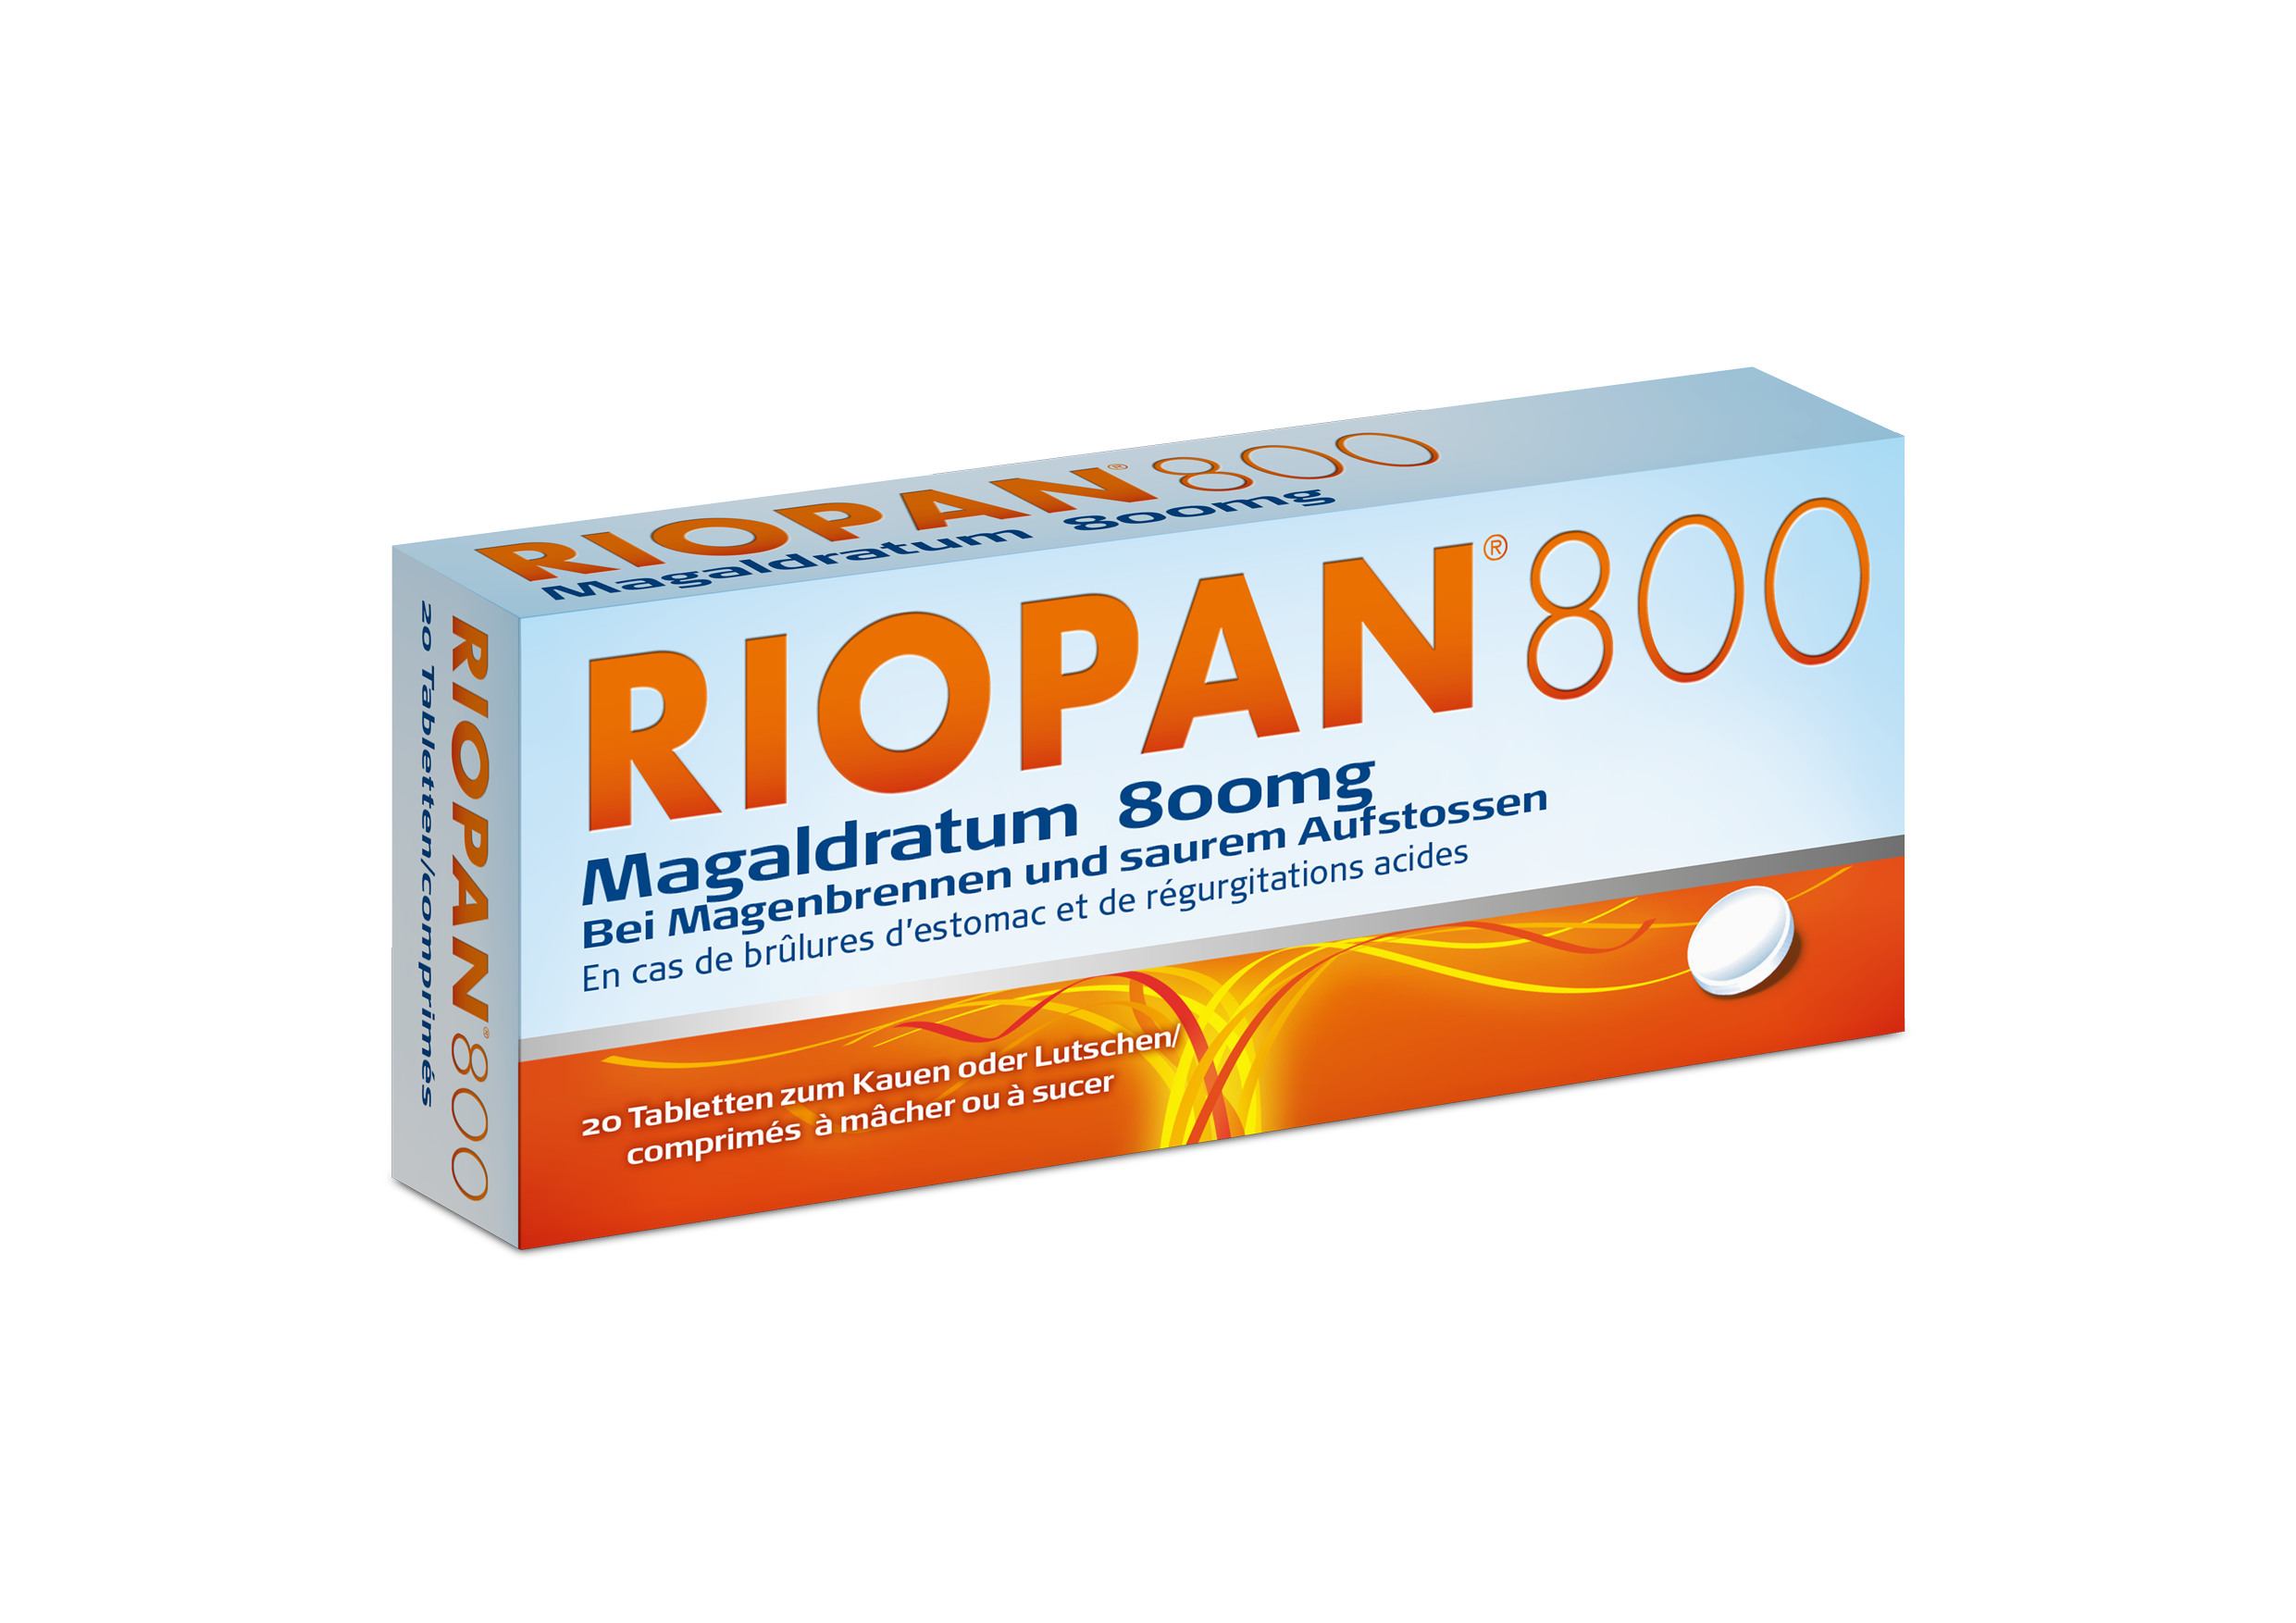 RIOPAN 800